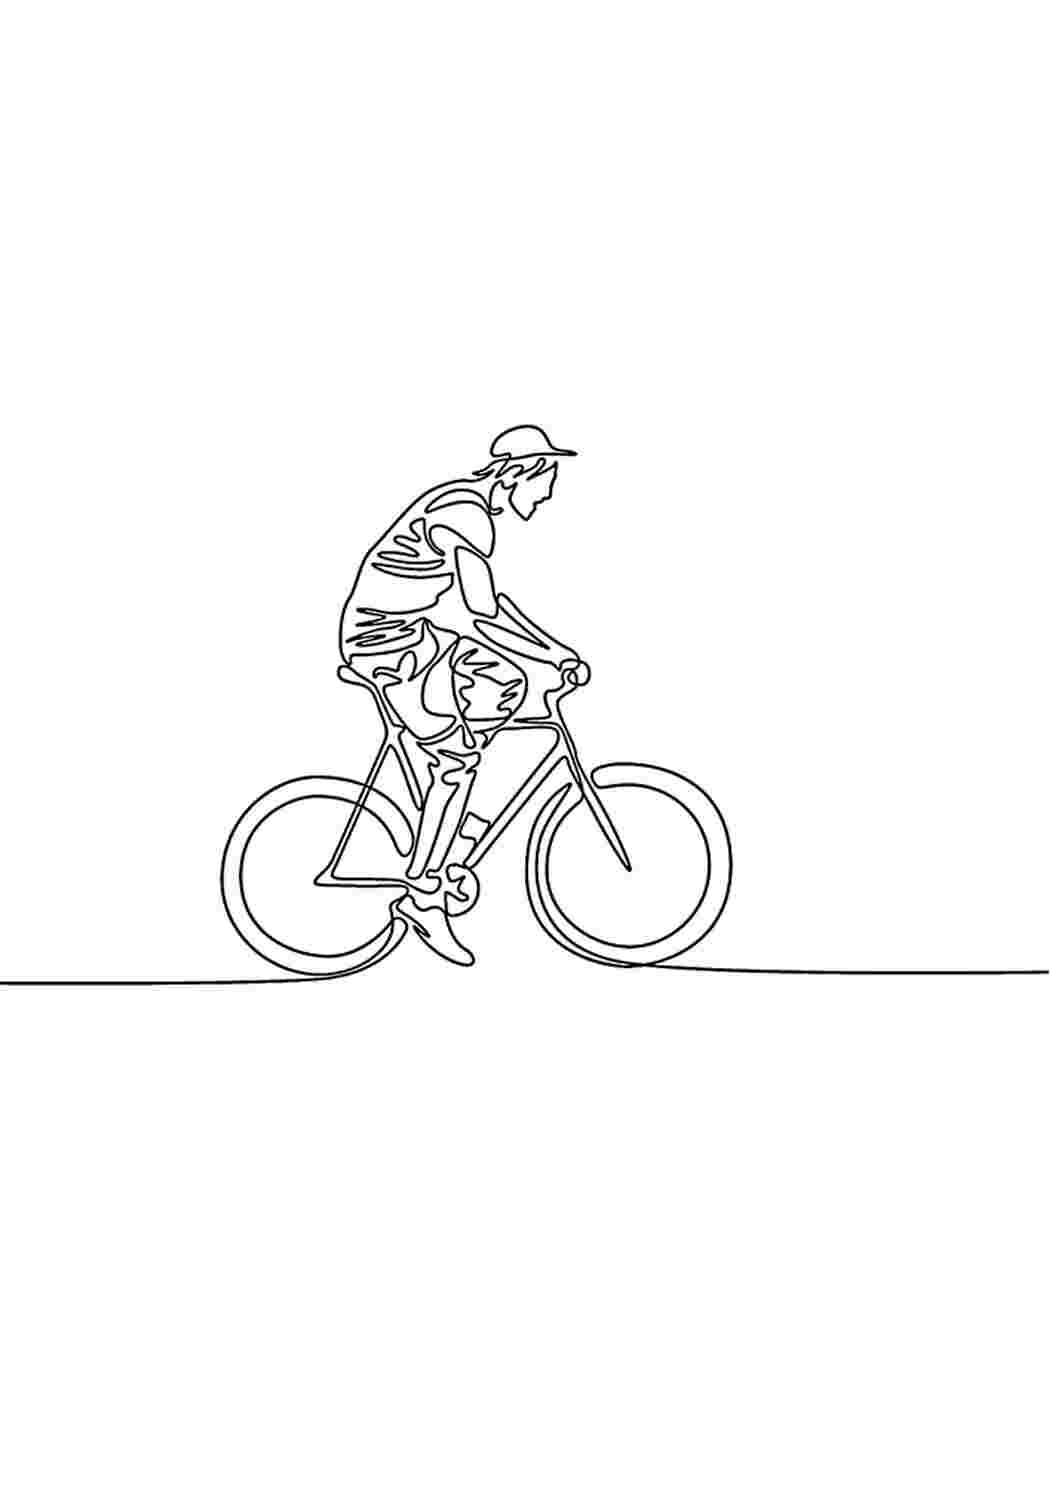 Человек едет на велосипеде рисунок лайн